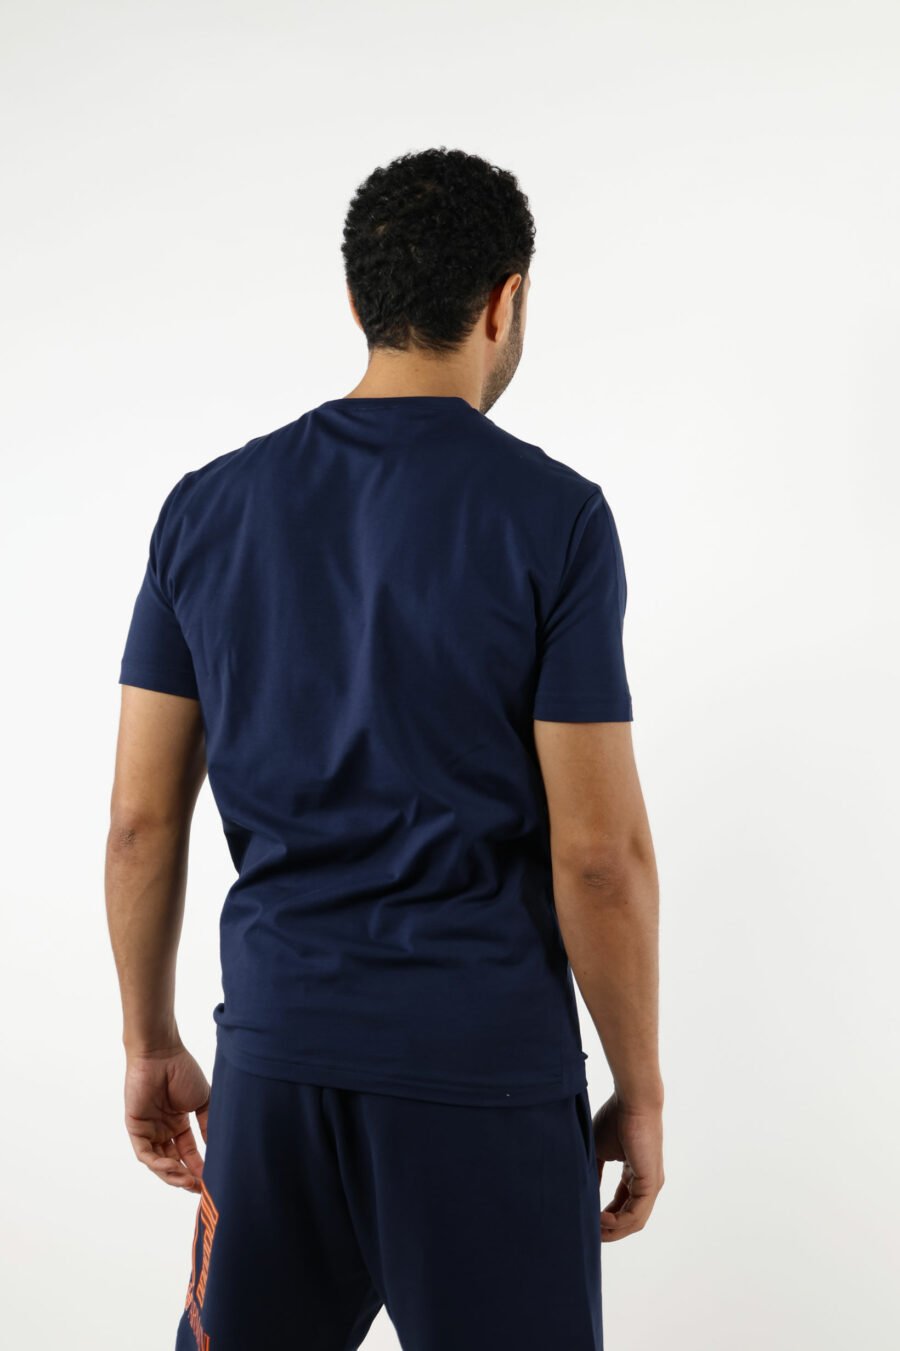 T-shirt bleu foncé avec maxilogo "lux identity" orange fluo - 110891